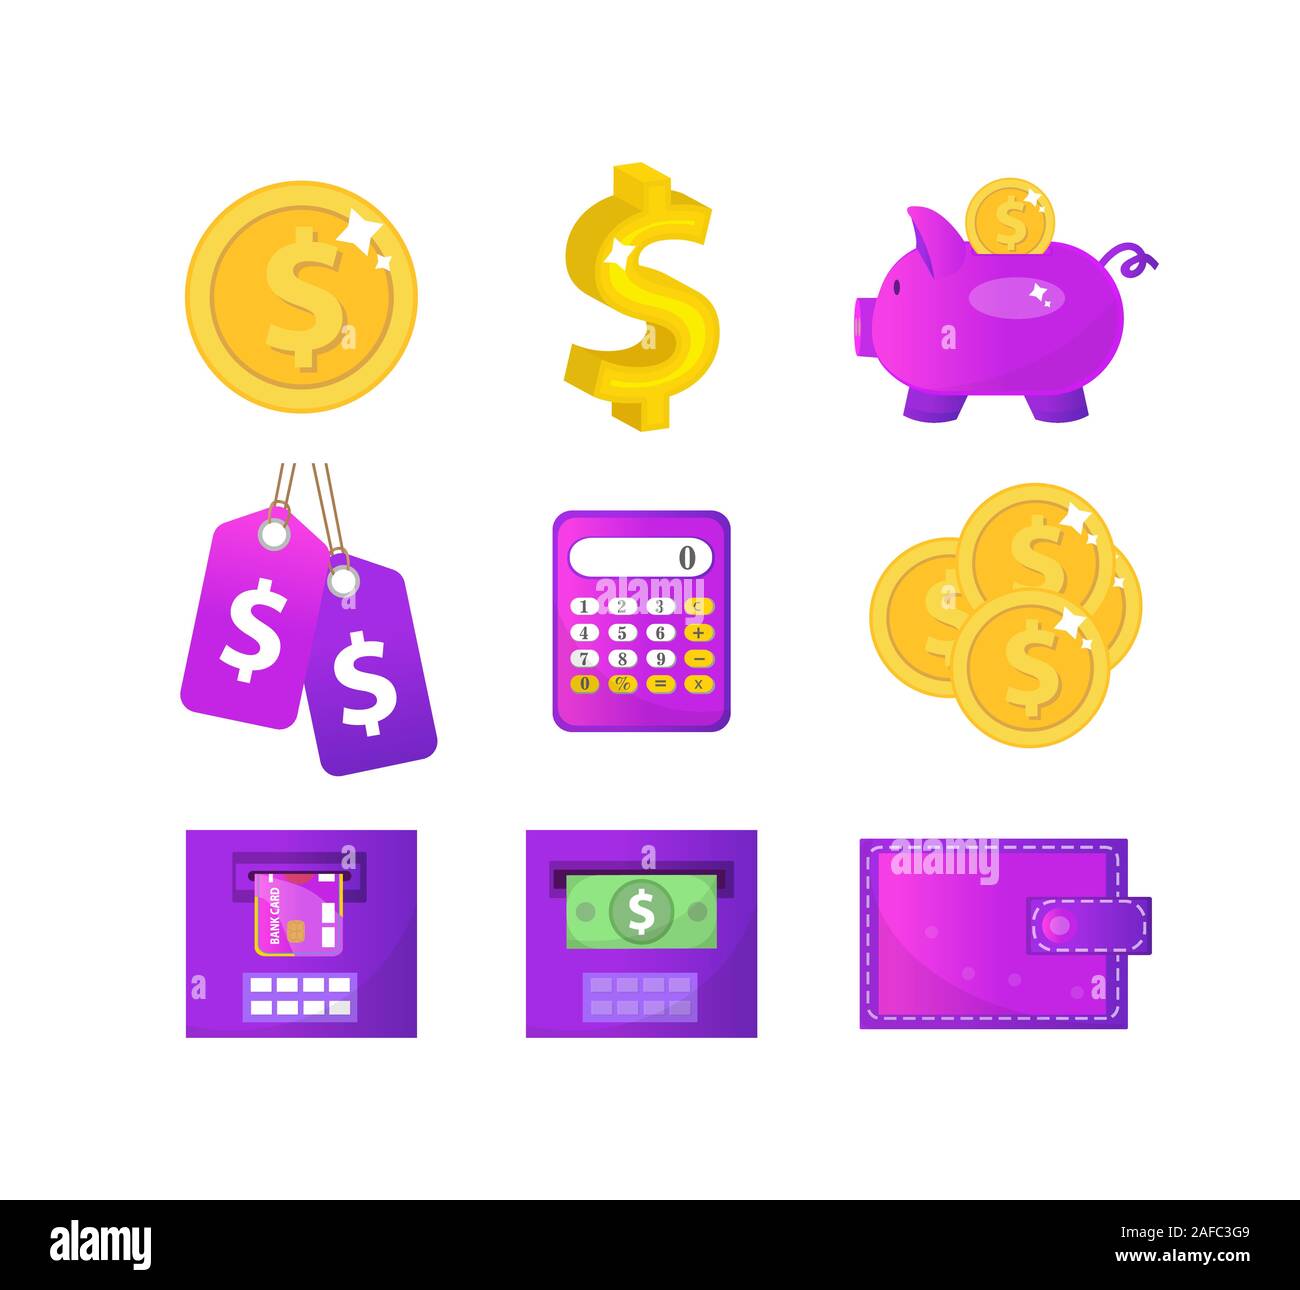 Geld und Finanzen Icons, modernen Stil. Finance icons Collection auf weißem Hintergrund. Geld für Web und Mobile Anwendung eingestellt ist. Bank Stock Vektor